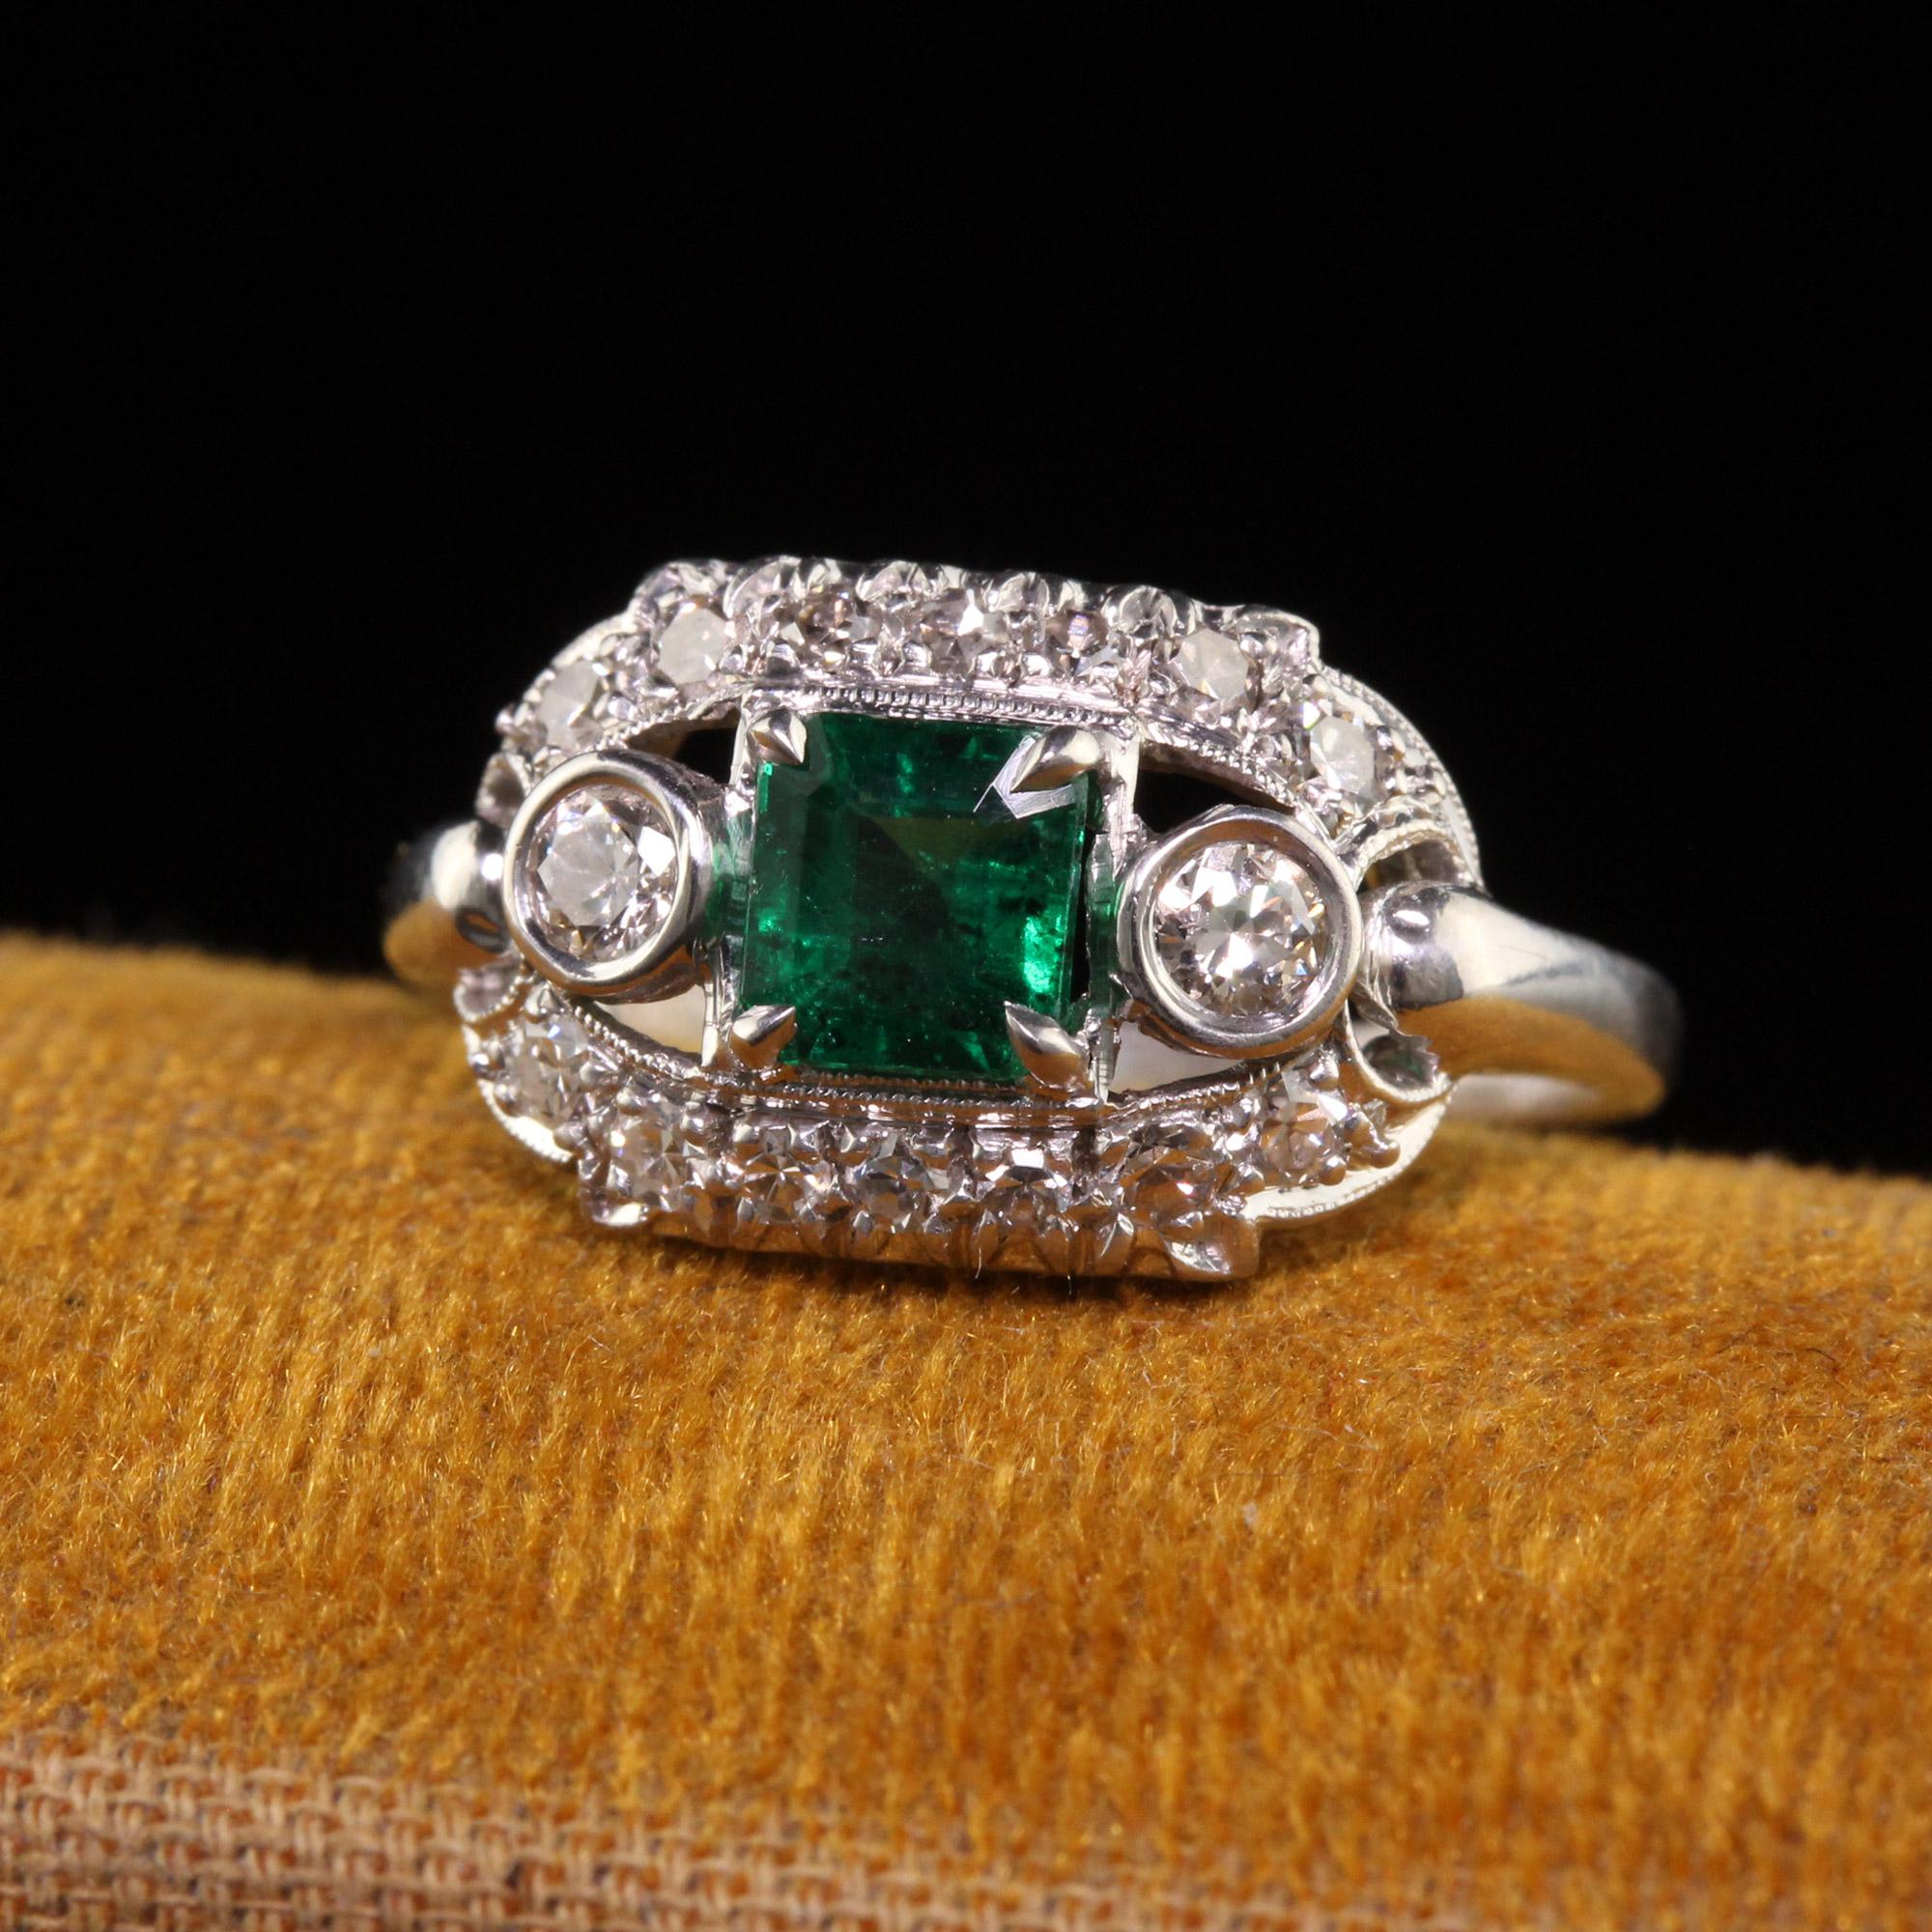 Schöner antiker Art Deco Platin Natürlicher Smaragd Diamant Verlobungsring. Dieser schöne Verlobungsring ist aus Platin gefertigt. In der Mitte befindet sich ein natürlicher Smaragd, um den herum wunderschöne Diamanten in einer prächtigen